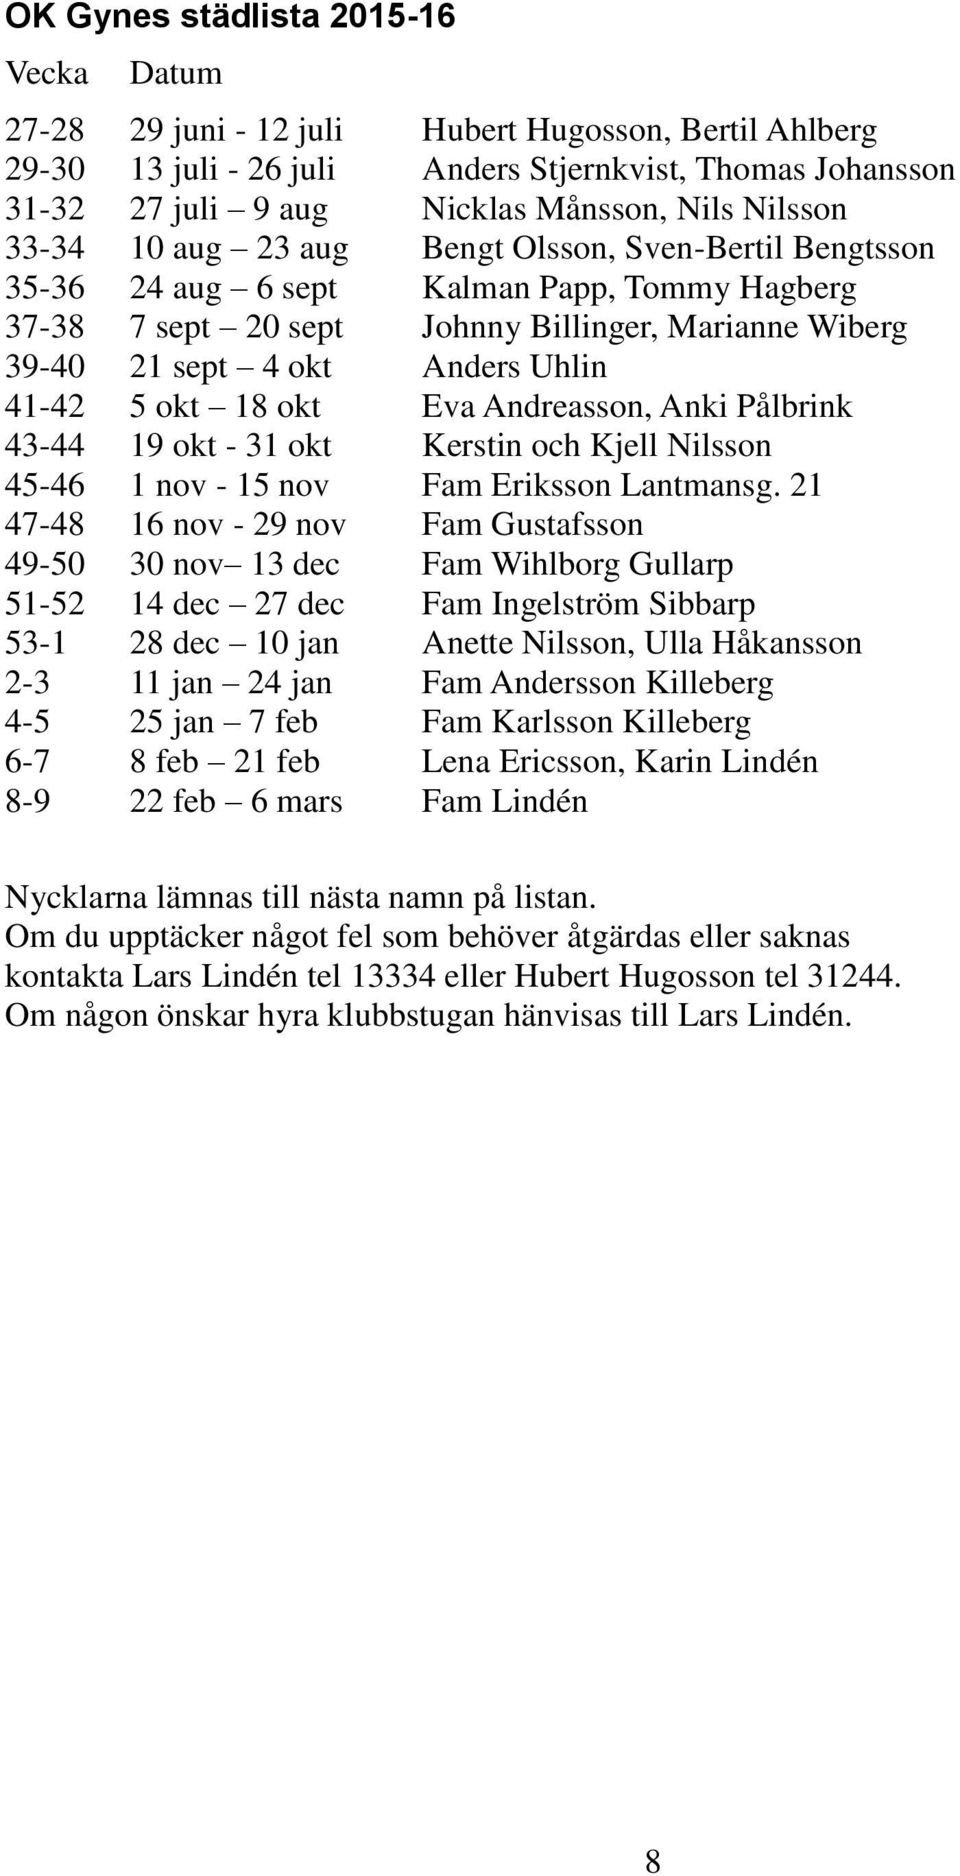 41-42 5 okt 18 okt Eva Andreasson, Anki Pålbrink 43-44 19 okt - 31 okt Kerstin och Kjell Nilsson 45-46 1 nov - 15 nov Fam Eriksson Lantmansg.